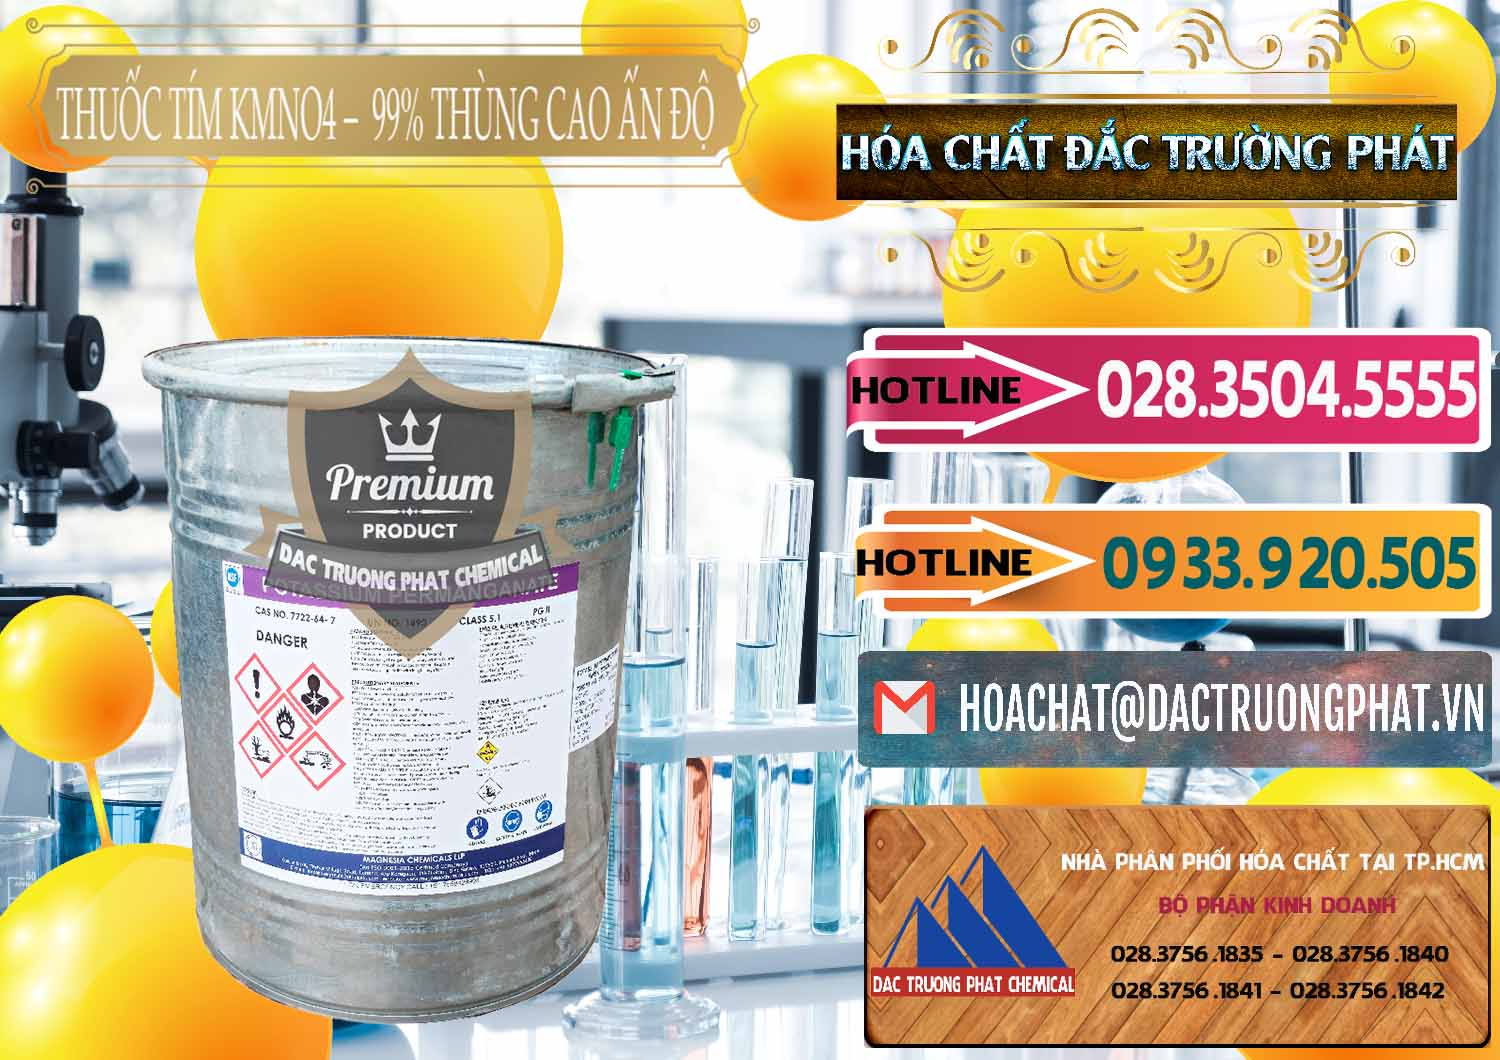 Đơn vị chuyên kinh doanh và bán Thuốc Tím - KMNO4 Thùng Cao 99% Magnesia Chemicals Ấn Độ India - 0164 - Chuyên cung ứng _ phân phối hóa chất tại TP.HCM - dactruongphat.vn